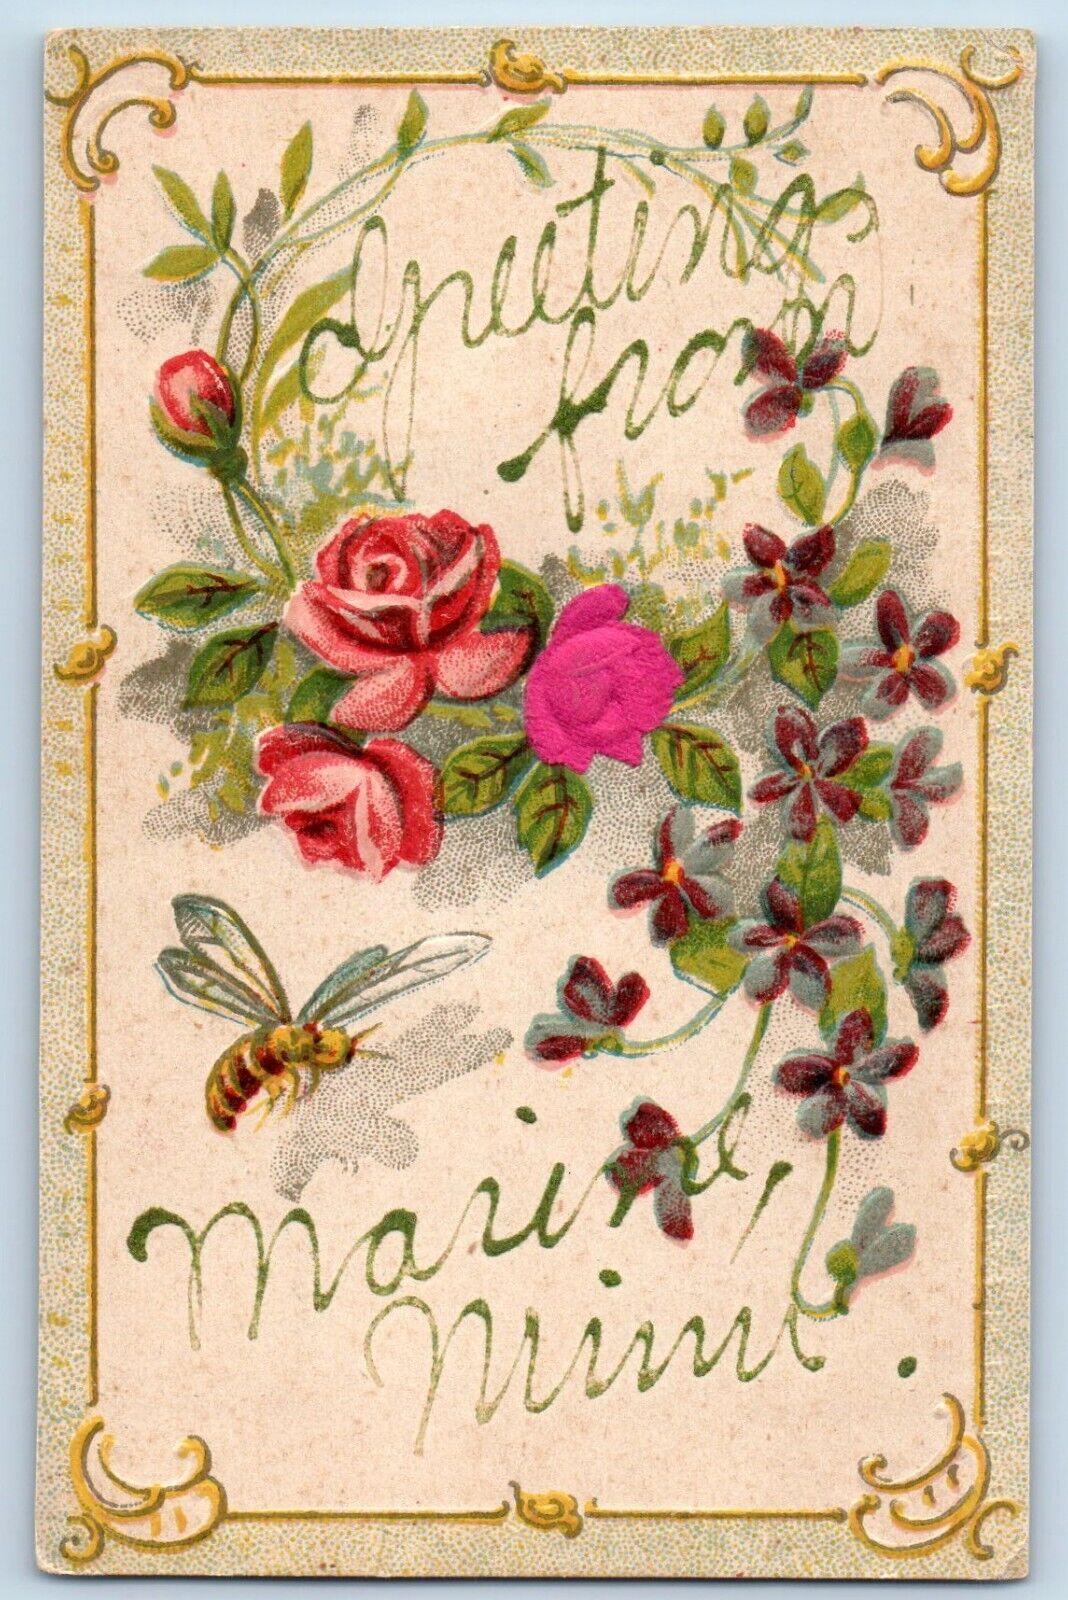 Marine Minnesota Postcard Embossed Glitter Greetings Flower 1907 Vintage Antique